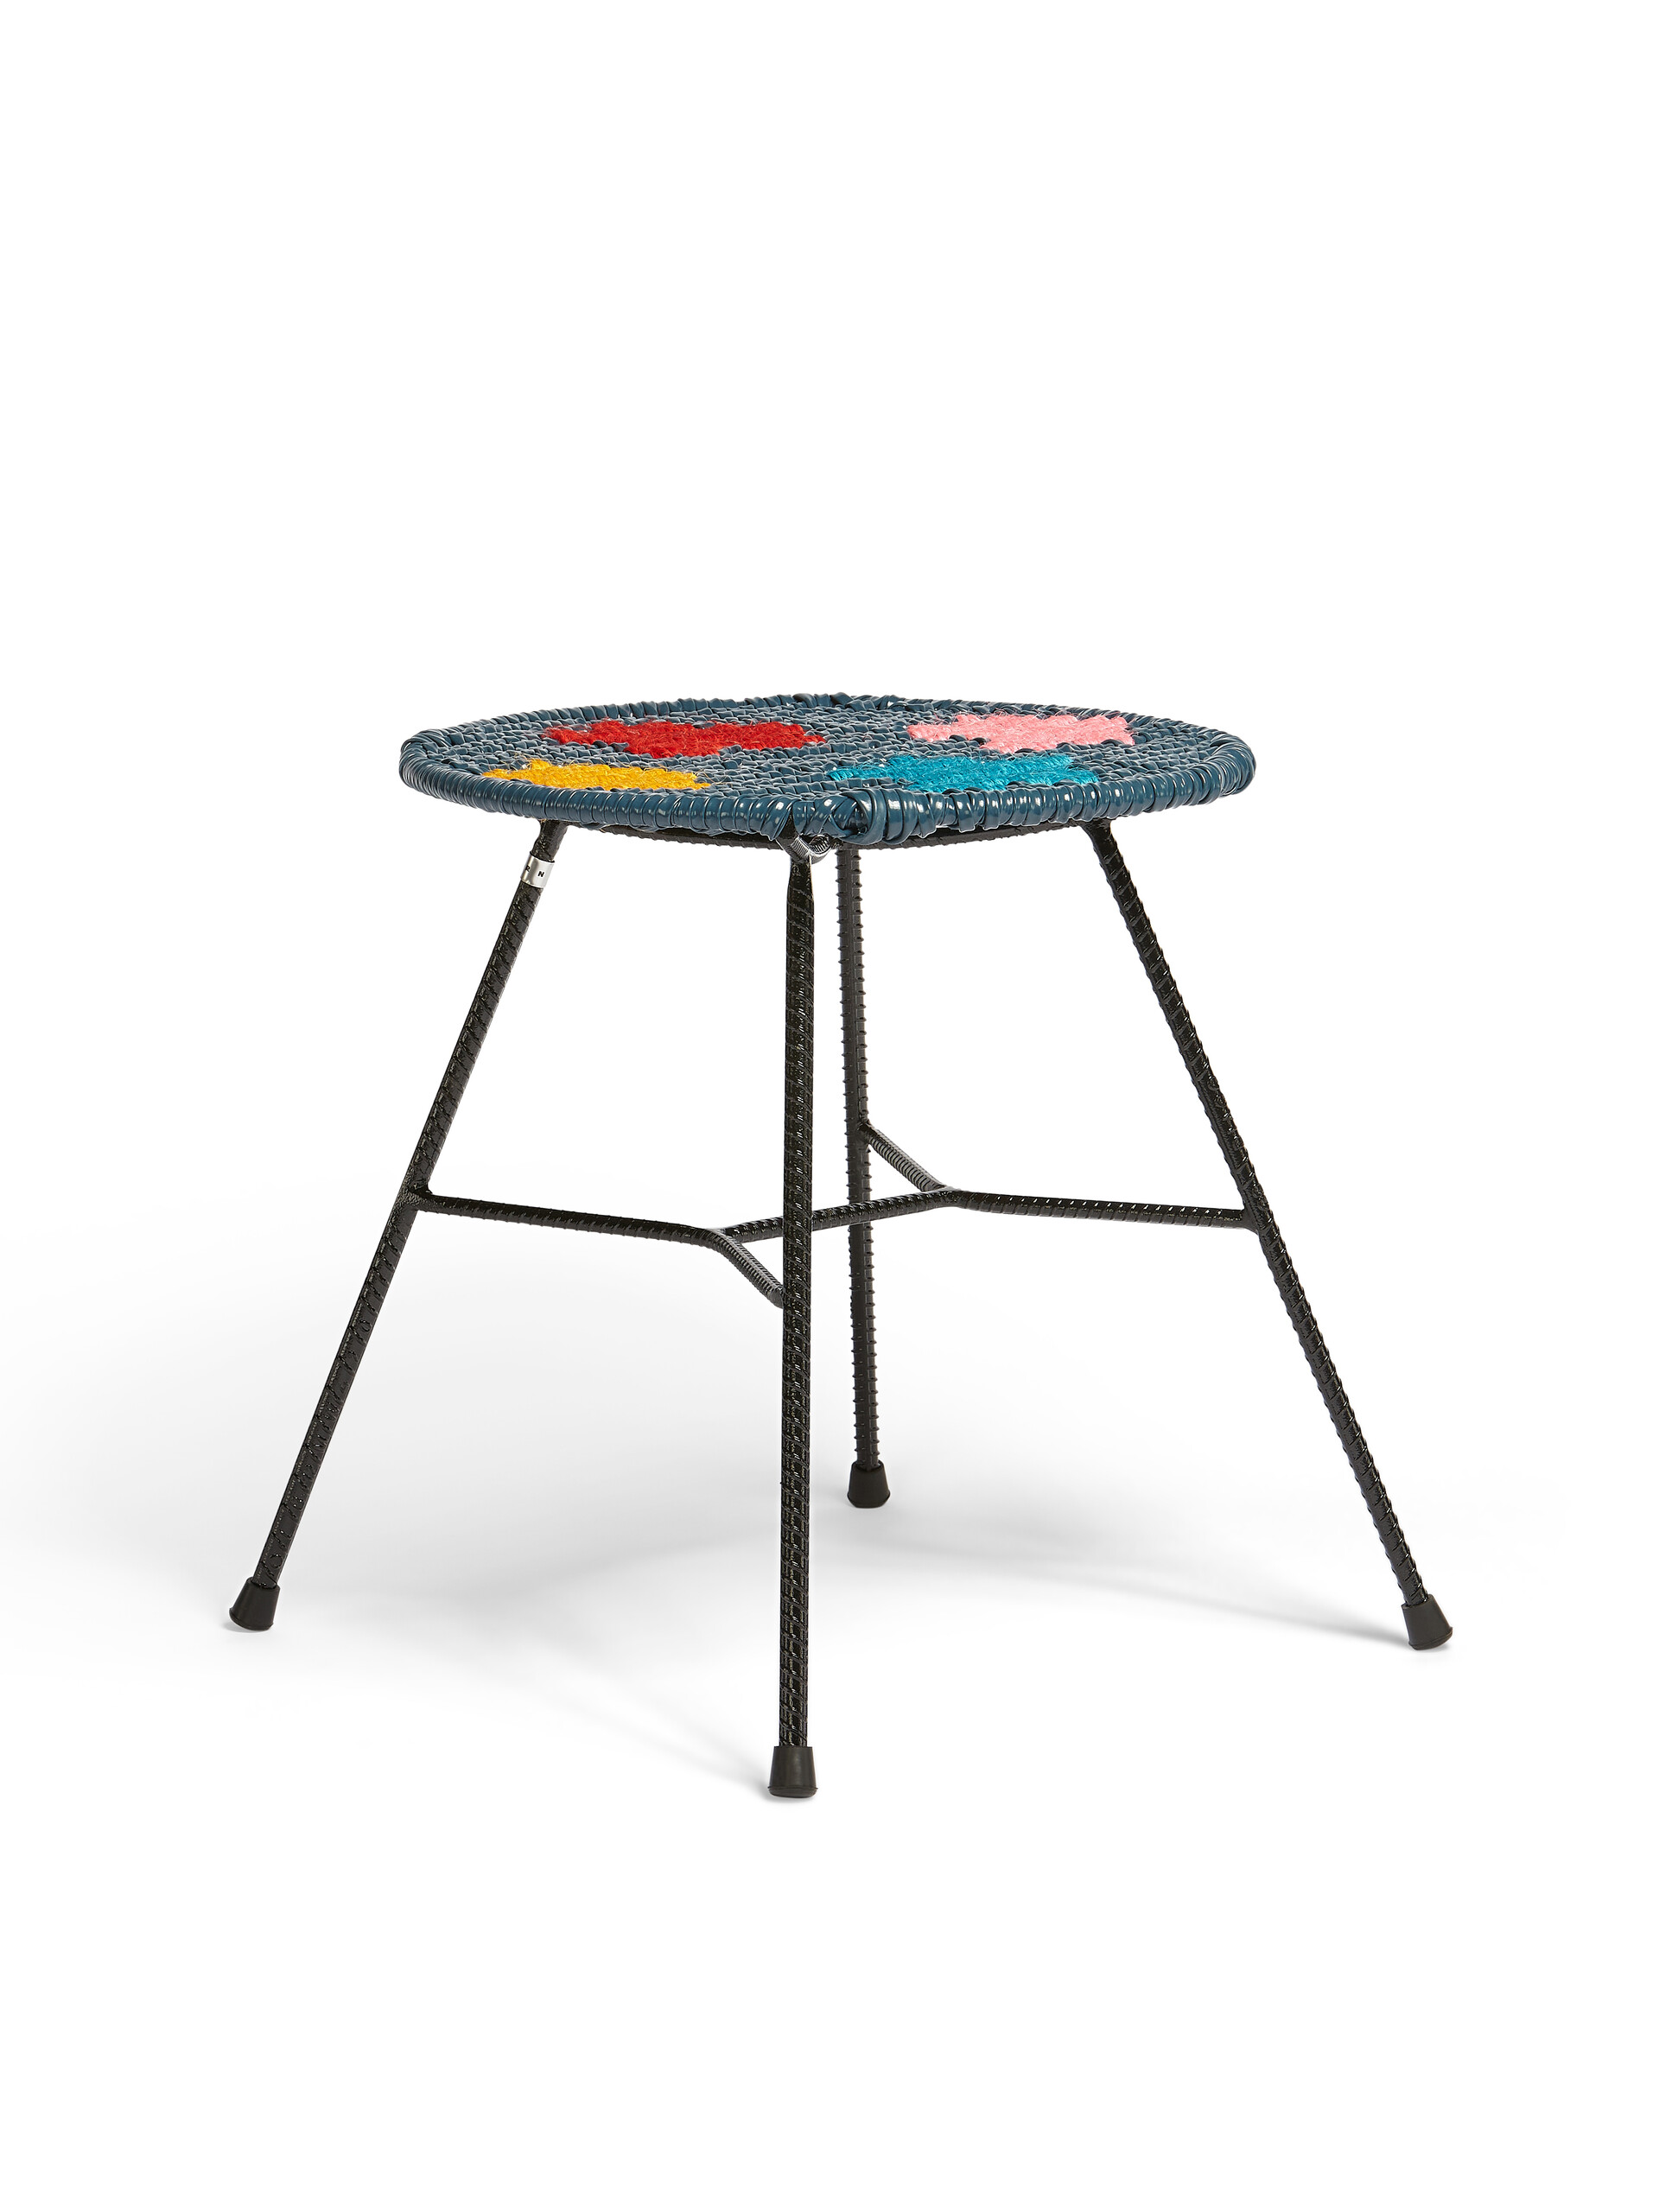 Sgabello-tavolo tondo MARNI MARKET in ferro PVC colorblock - Arredamento - Image 2